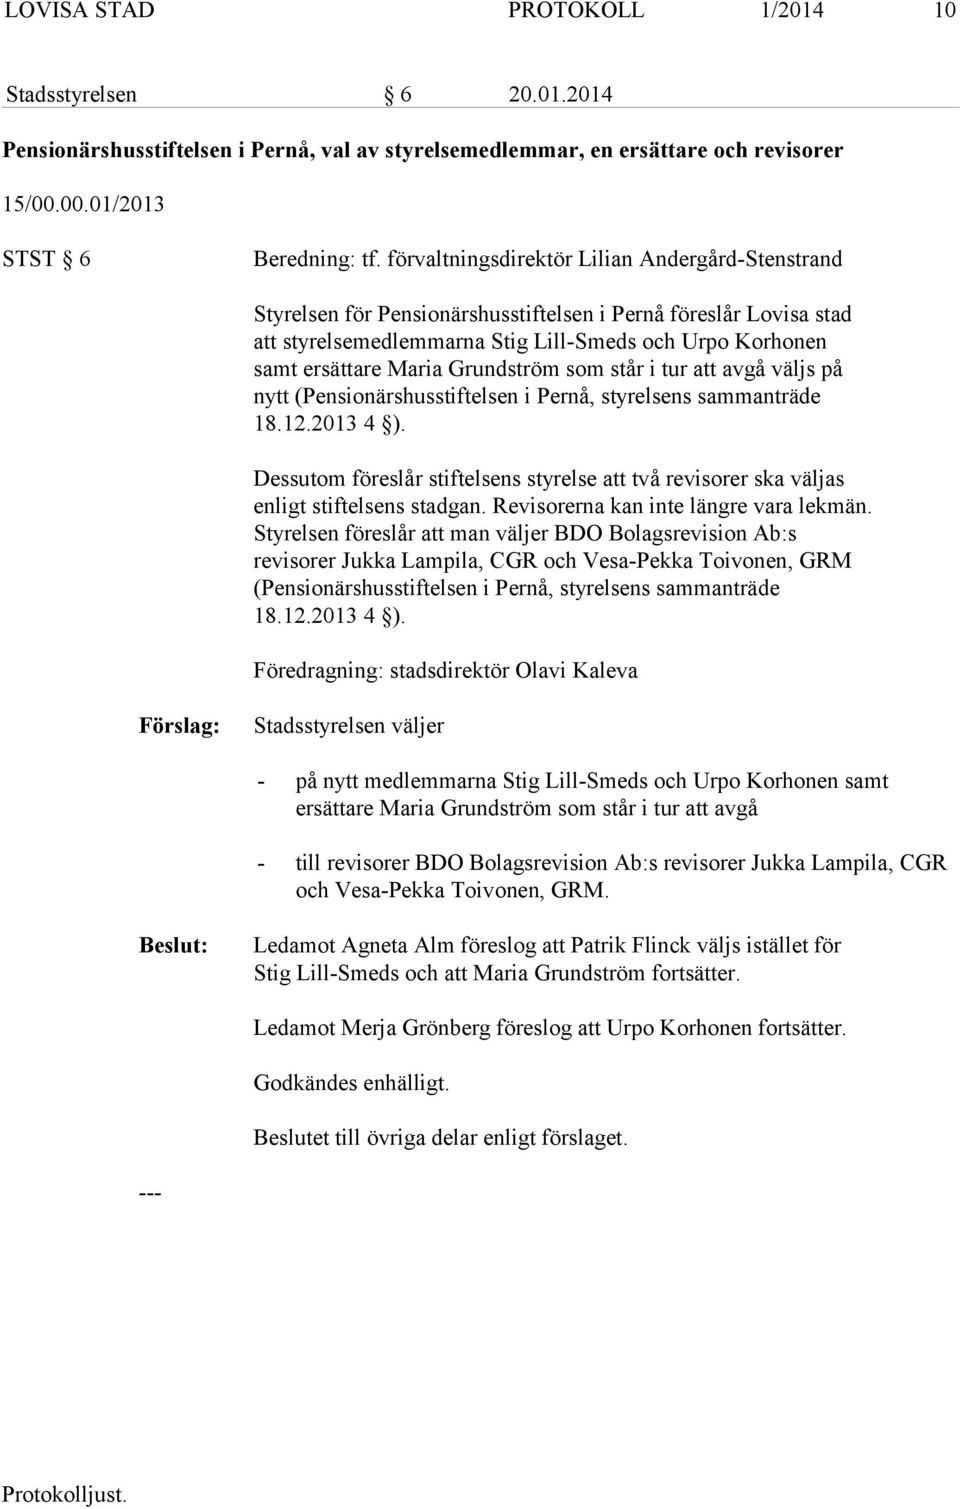 Grundström som står i tur att avgå väljs på nytt (Pensionärshusstiftelsen i Pernå, styrelsens sammanträde 18.12.2013 4 ).